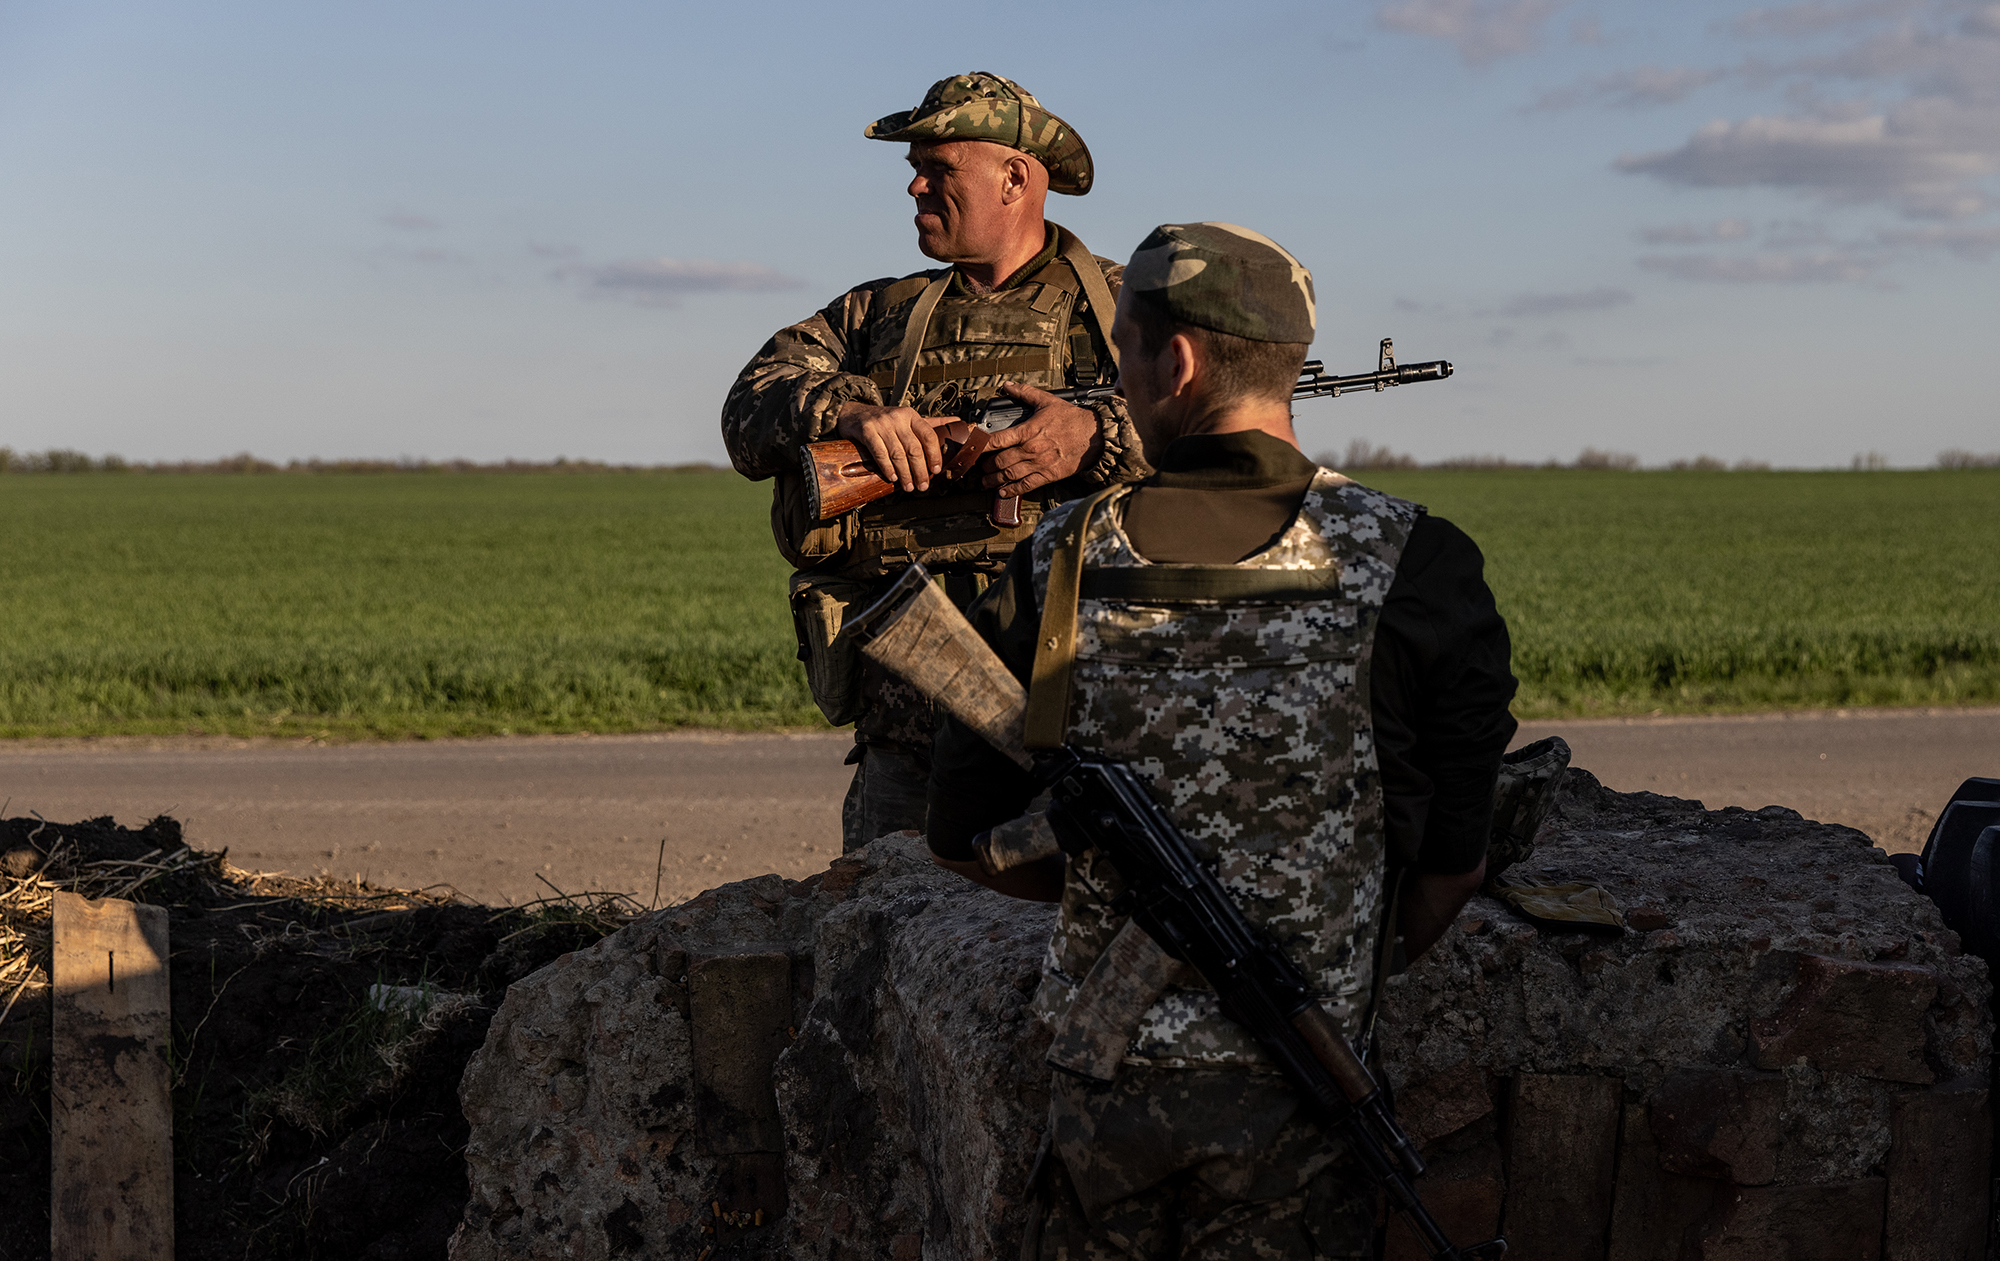 Сценарии войны. Как далеко может зайти российская армия в Украине